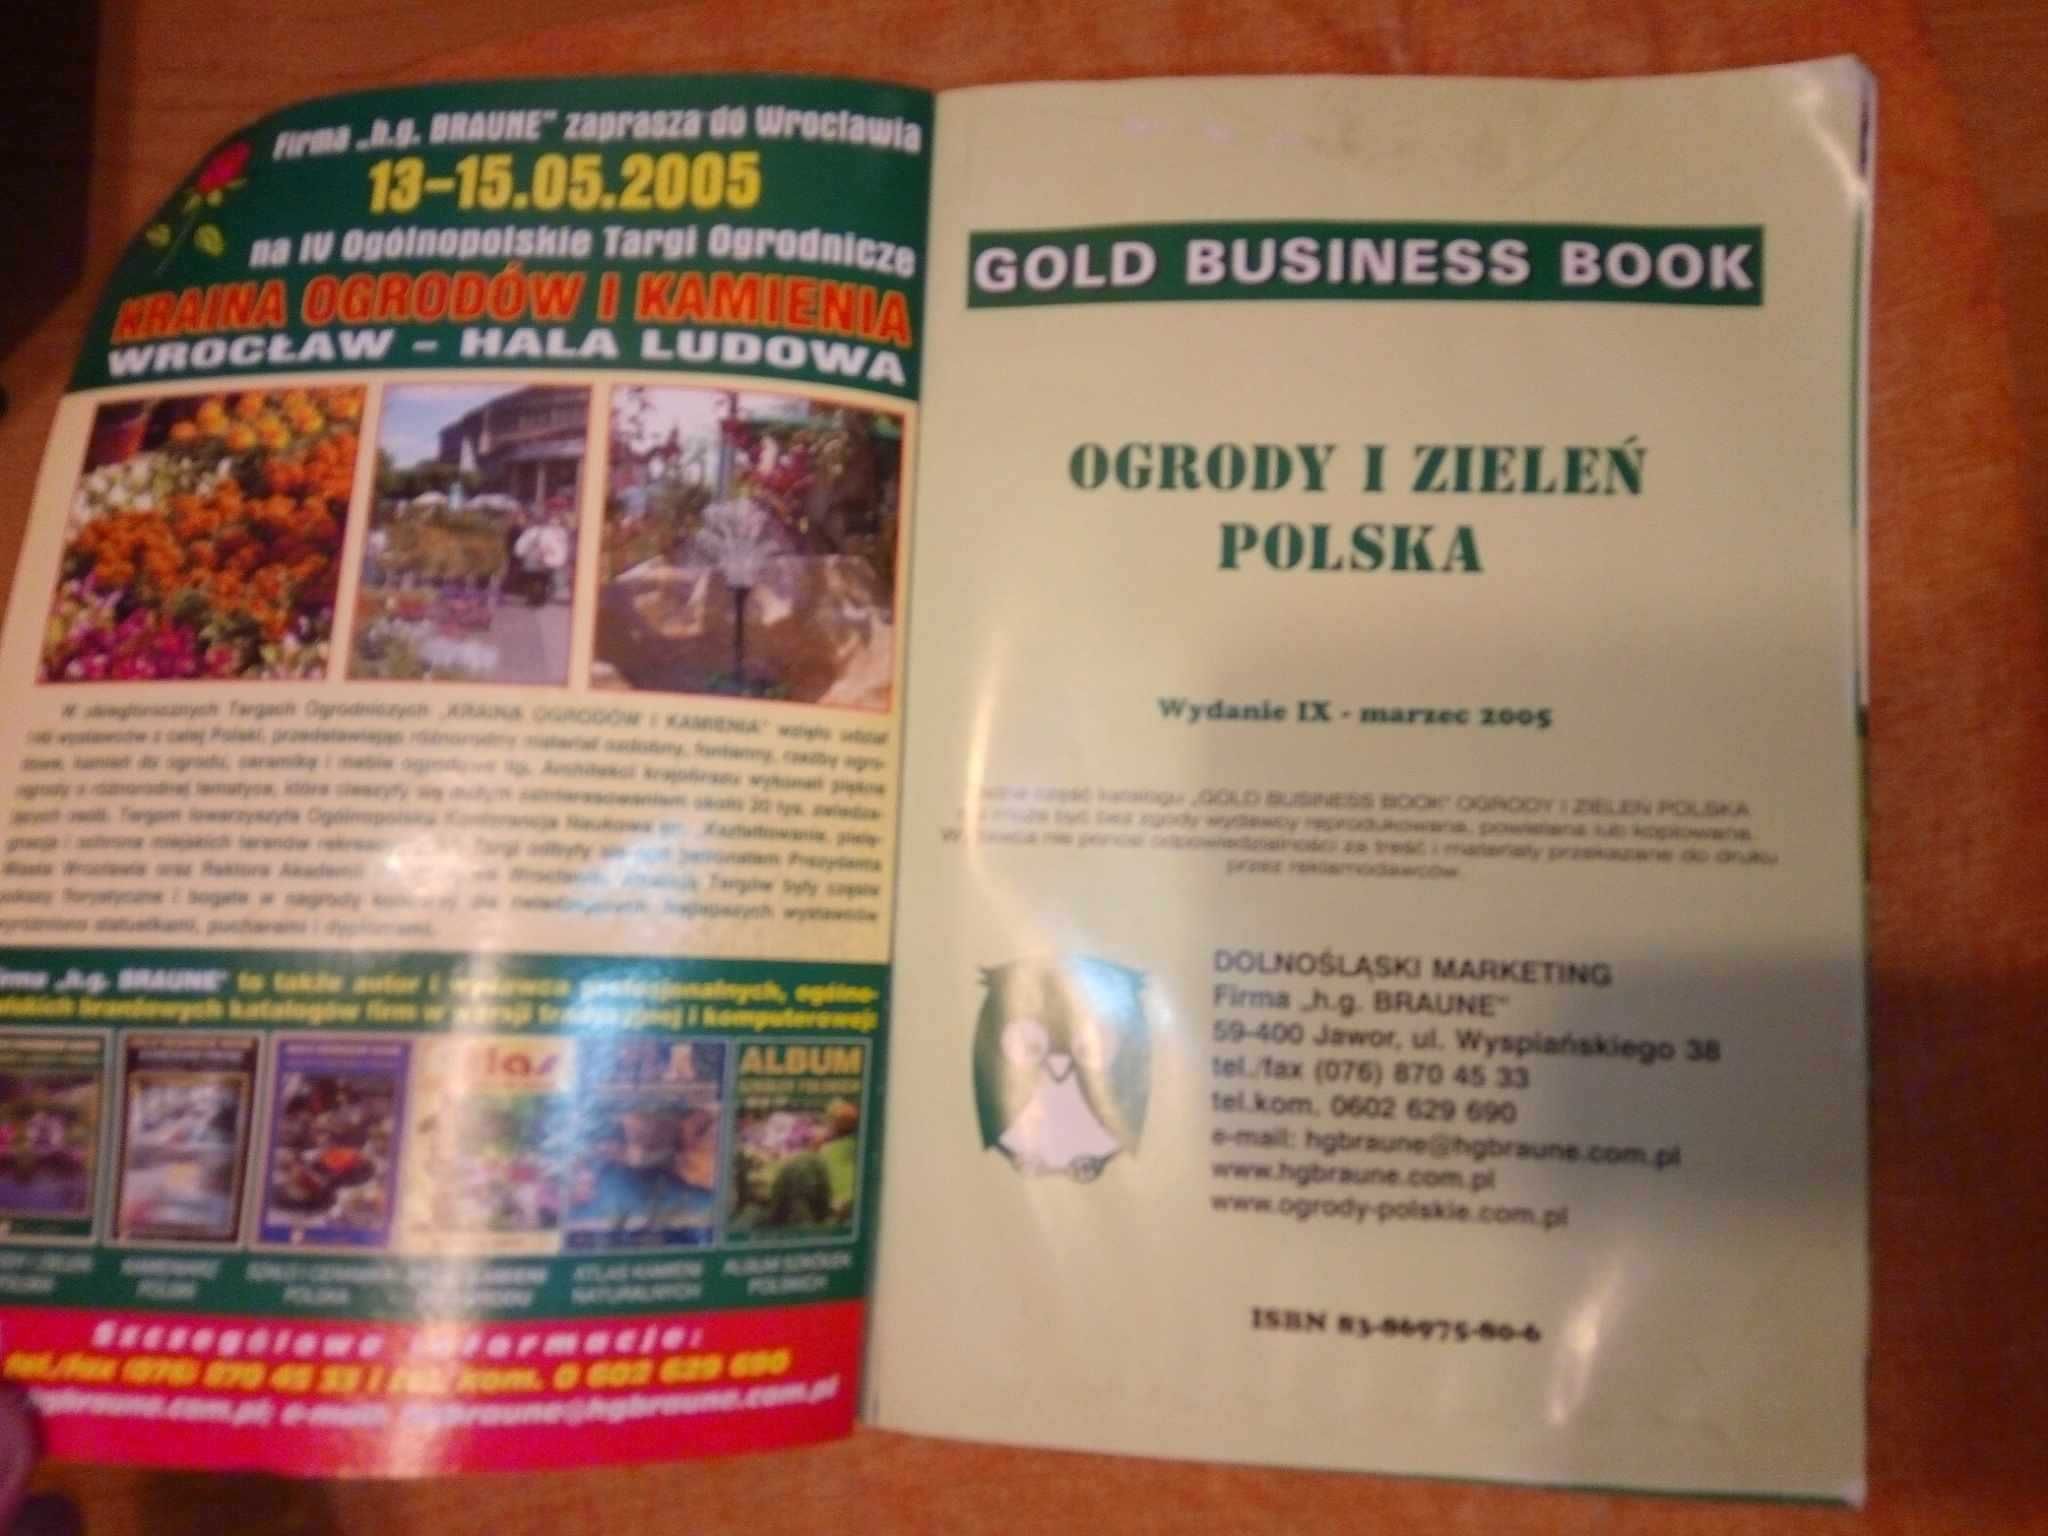 Ogrody i zieleń polska Gold Business Book Wydanie IX 2005 h.g.Braune